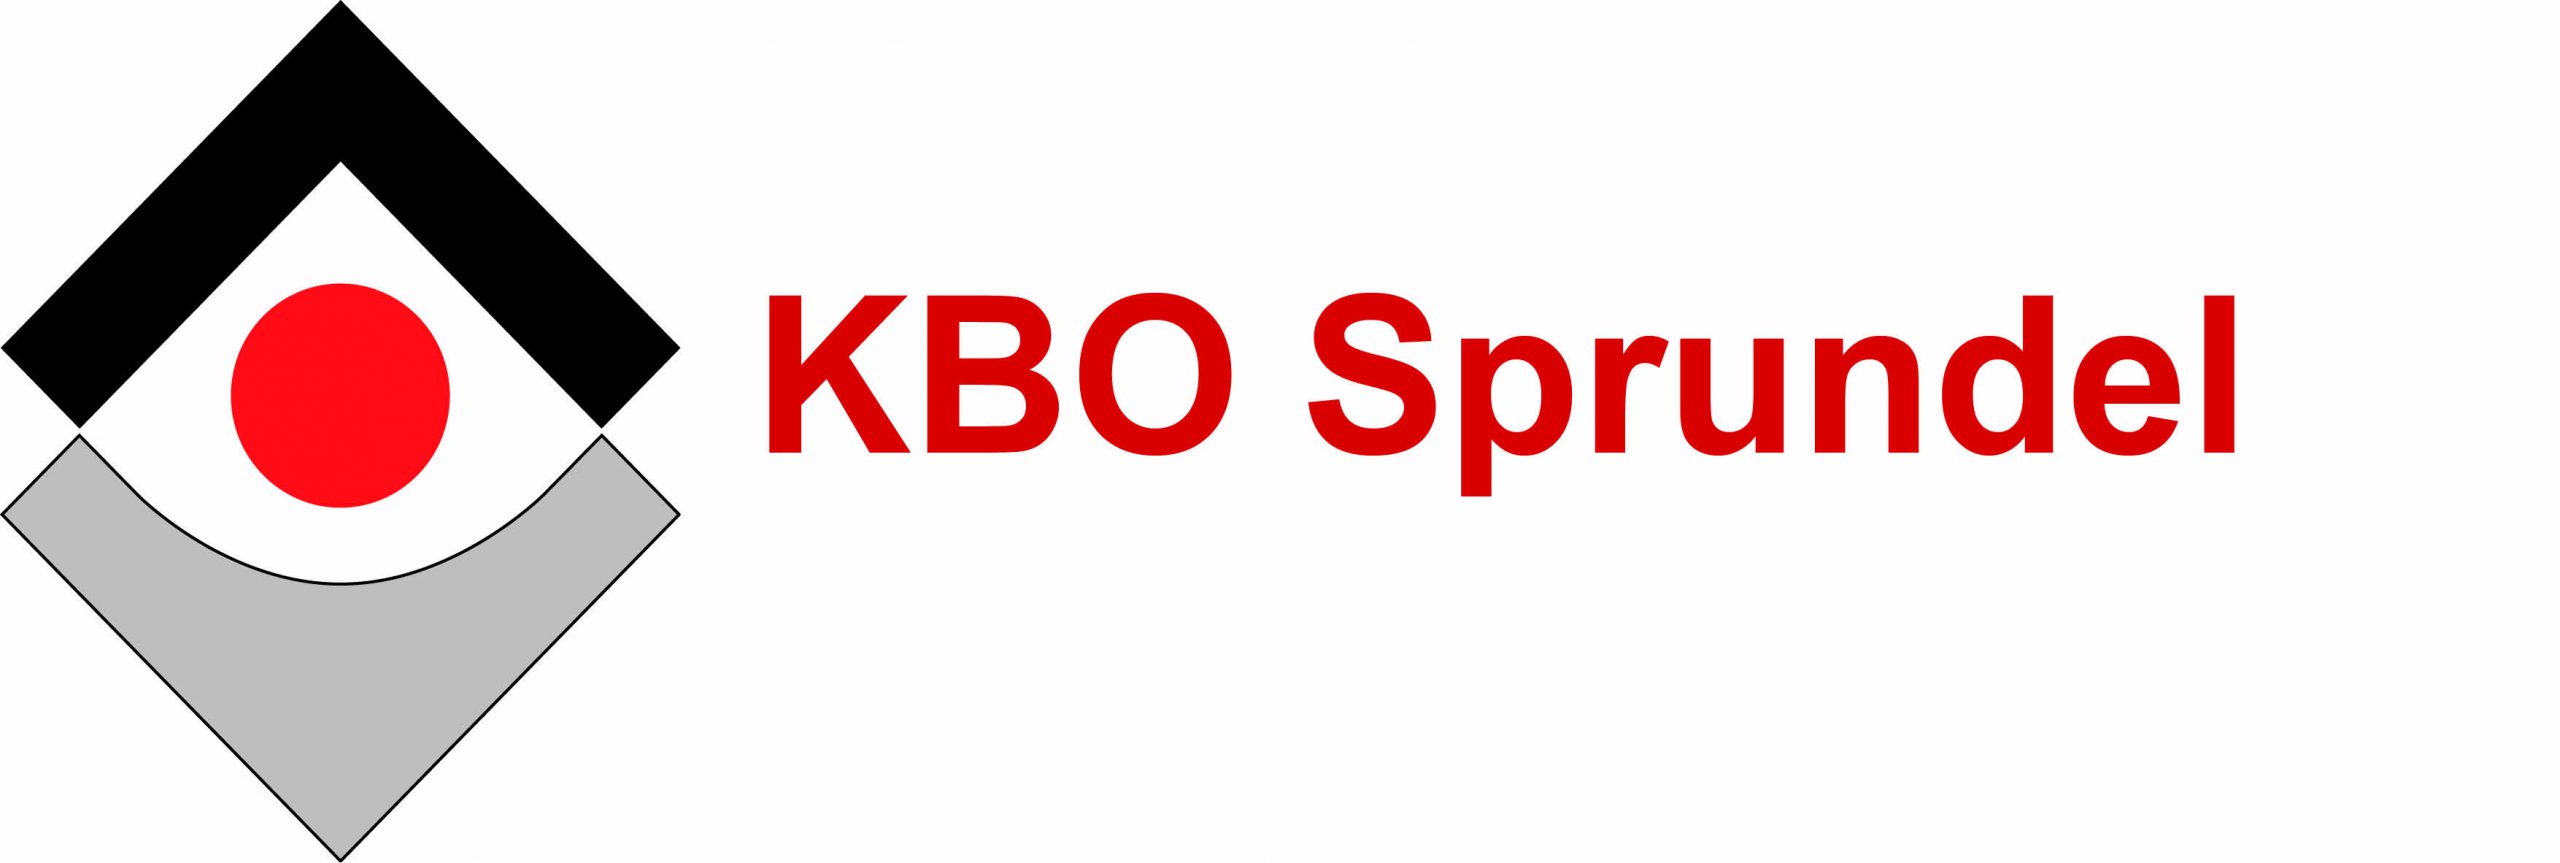 KBO Sprundel